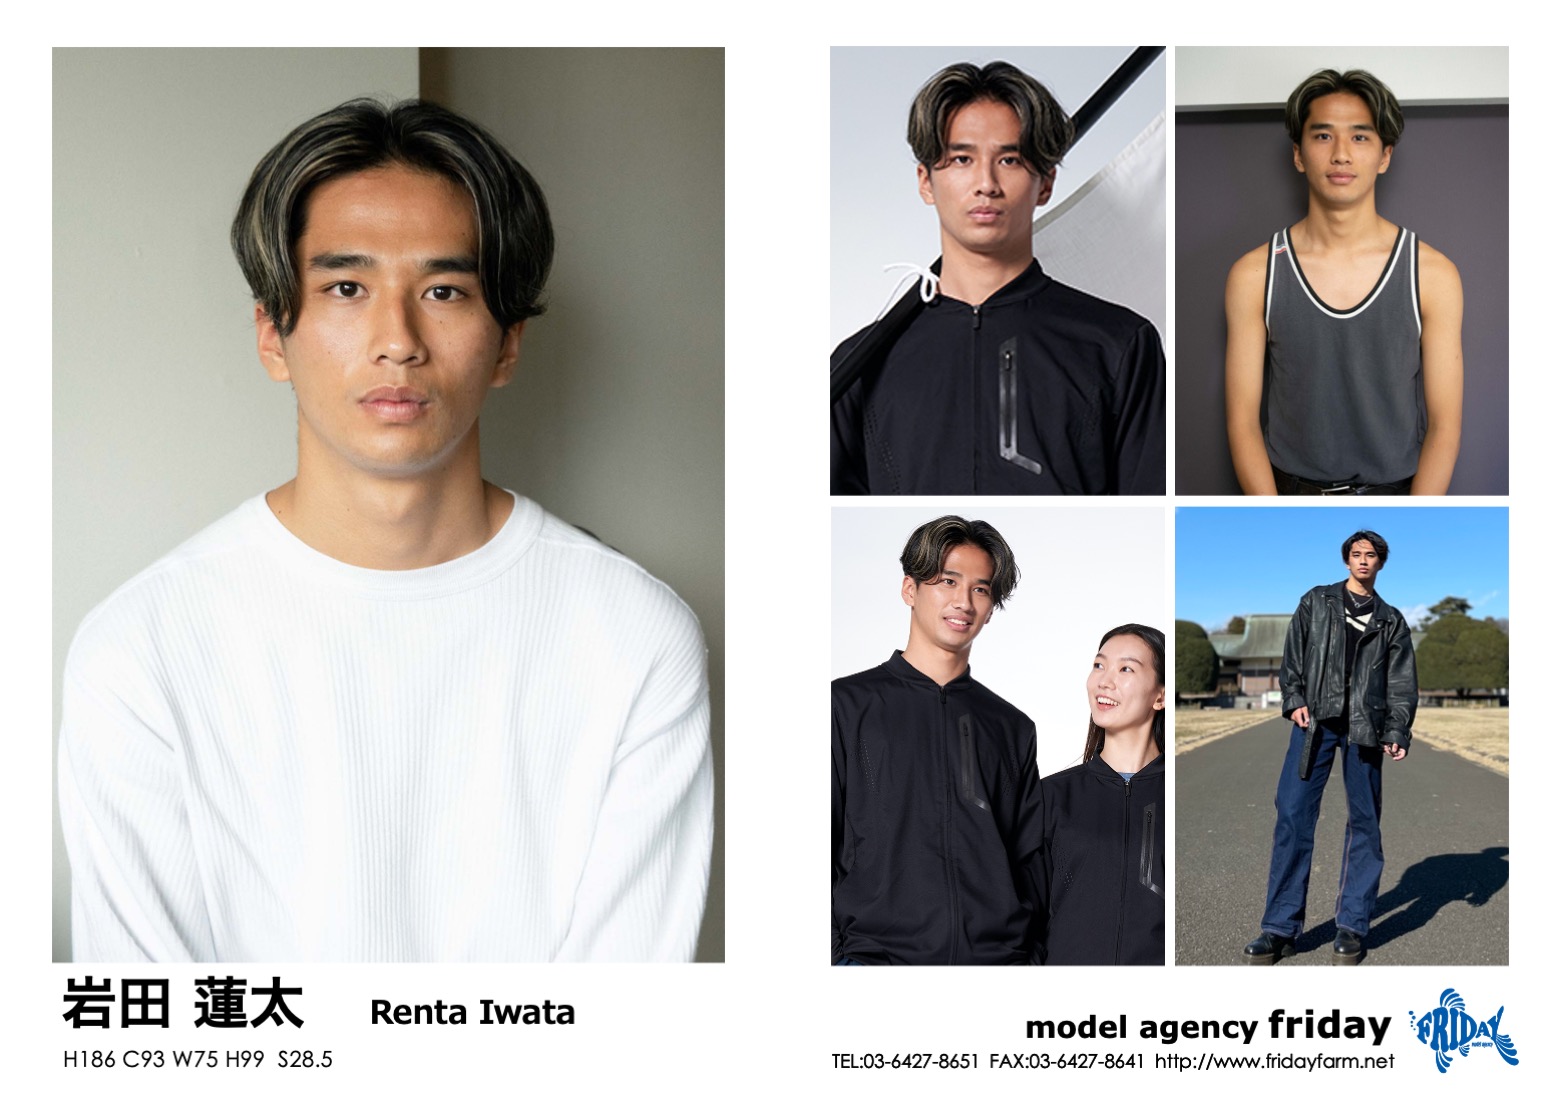 岩田 蓮太 - Renta Iwata | model agency friday